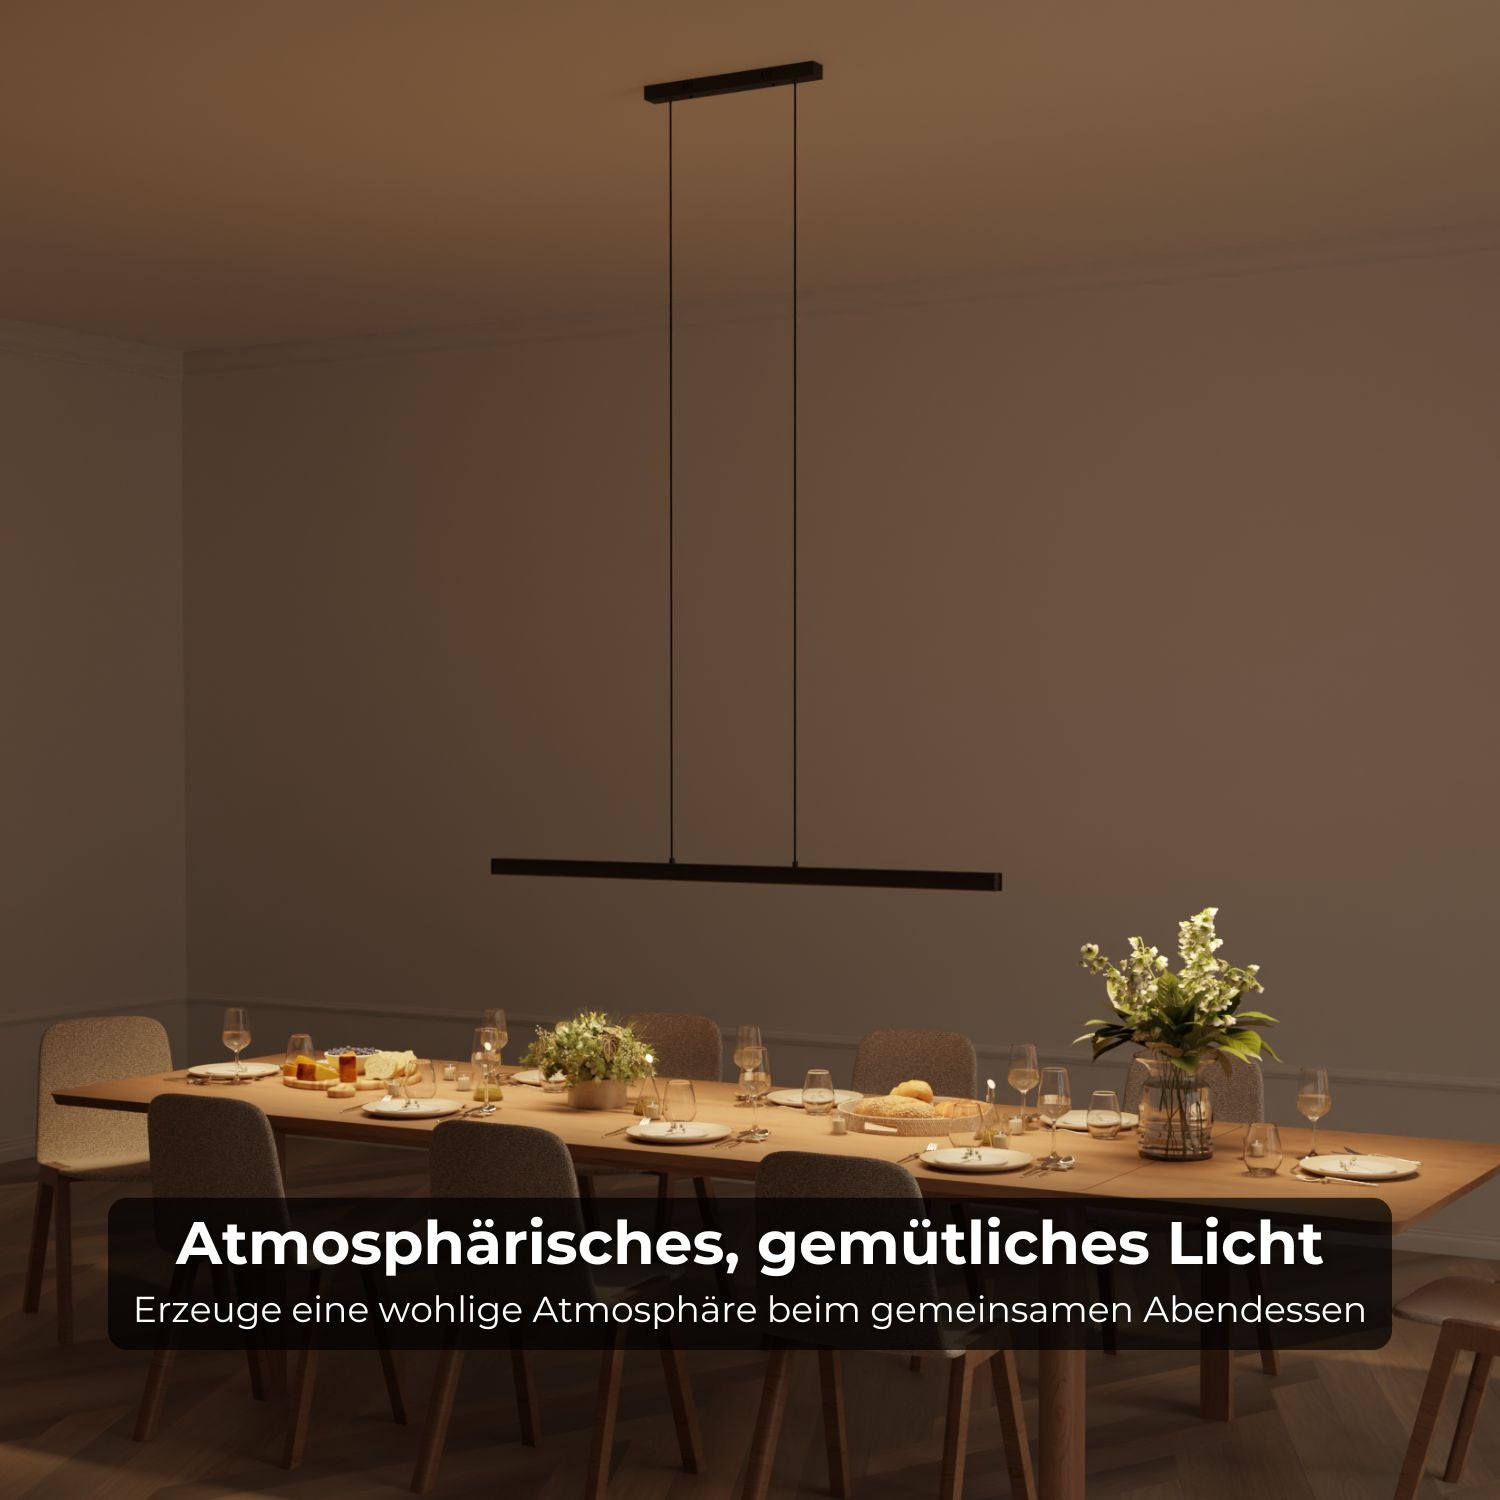 B-goods: Calimera designer pendant lamp